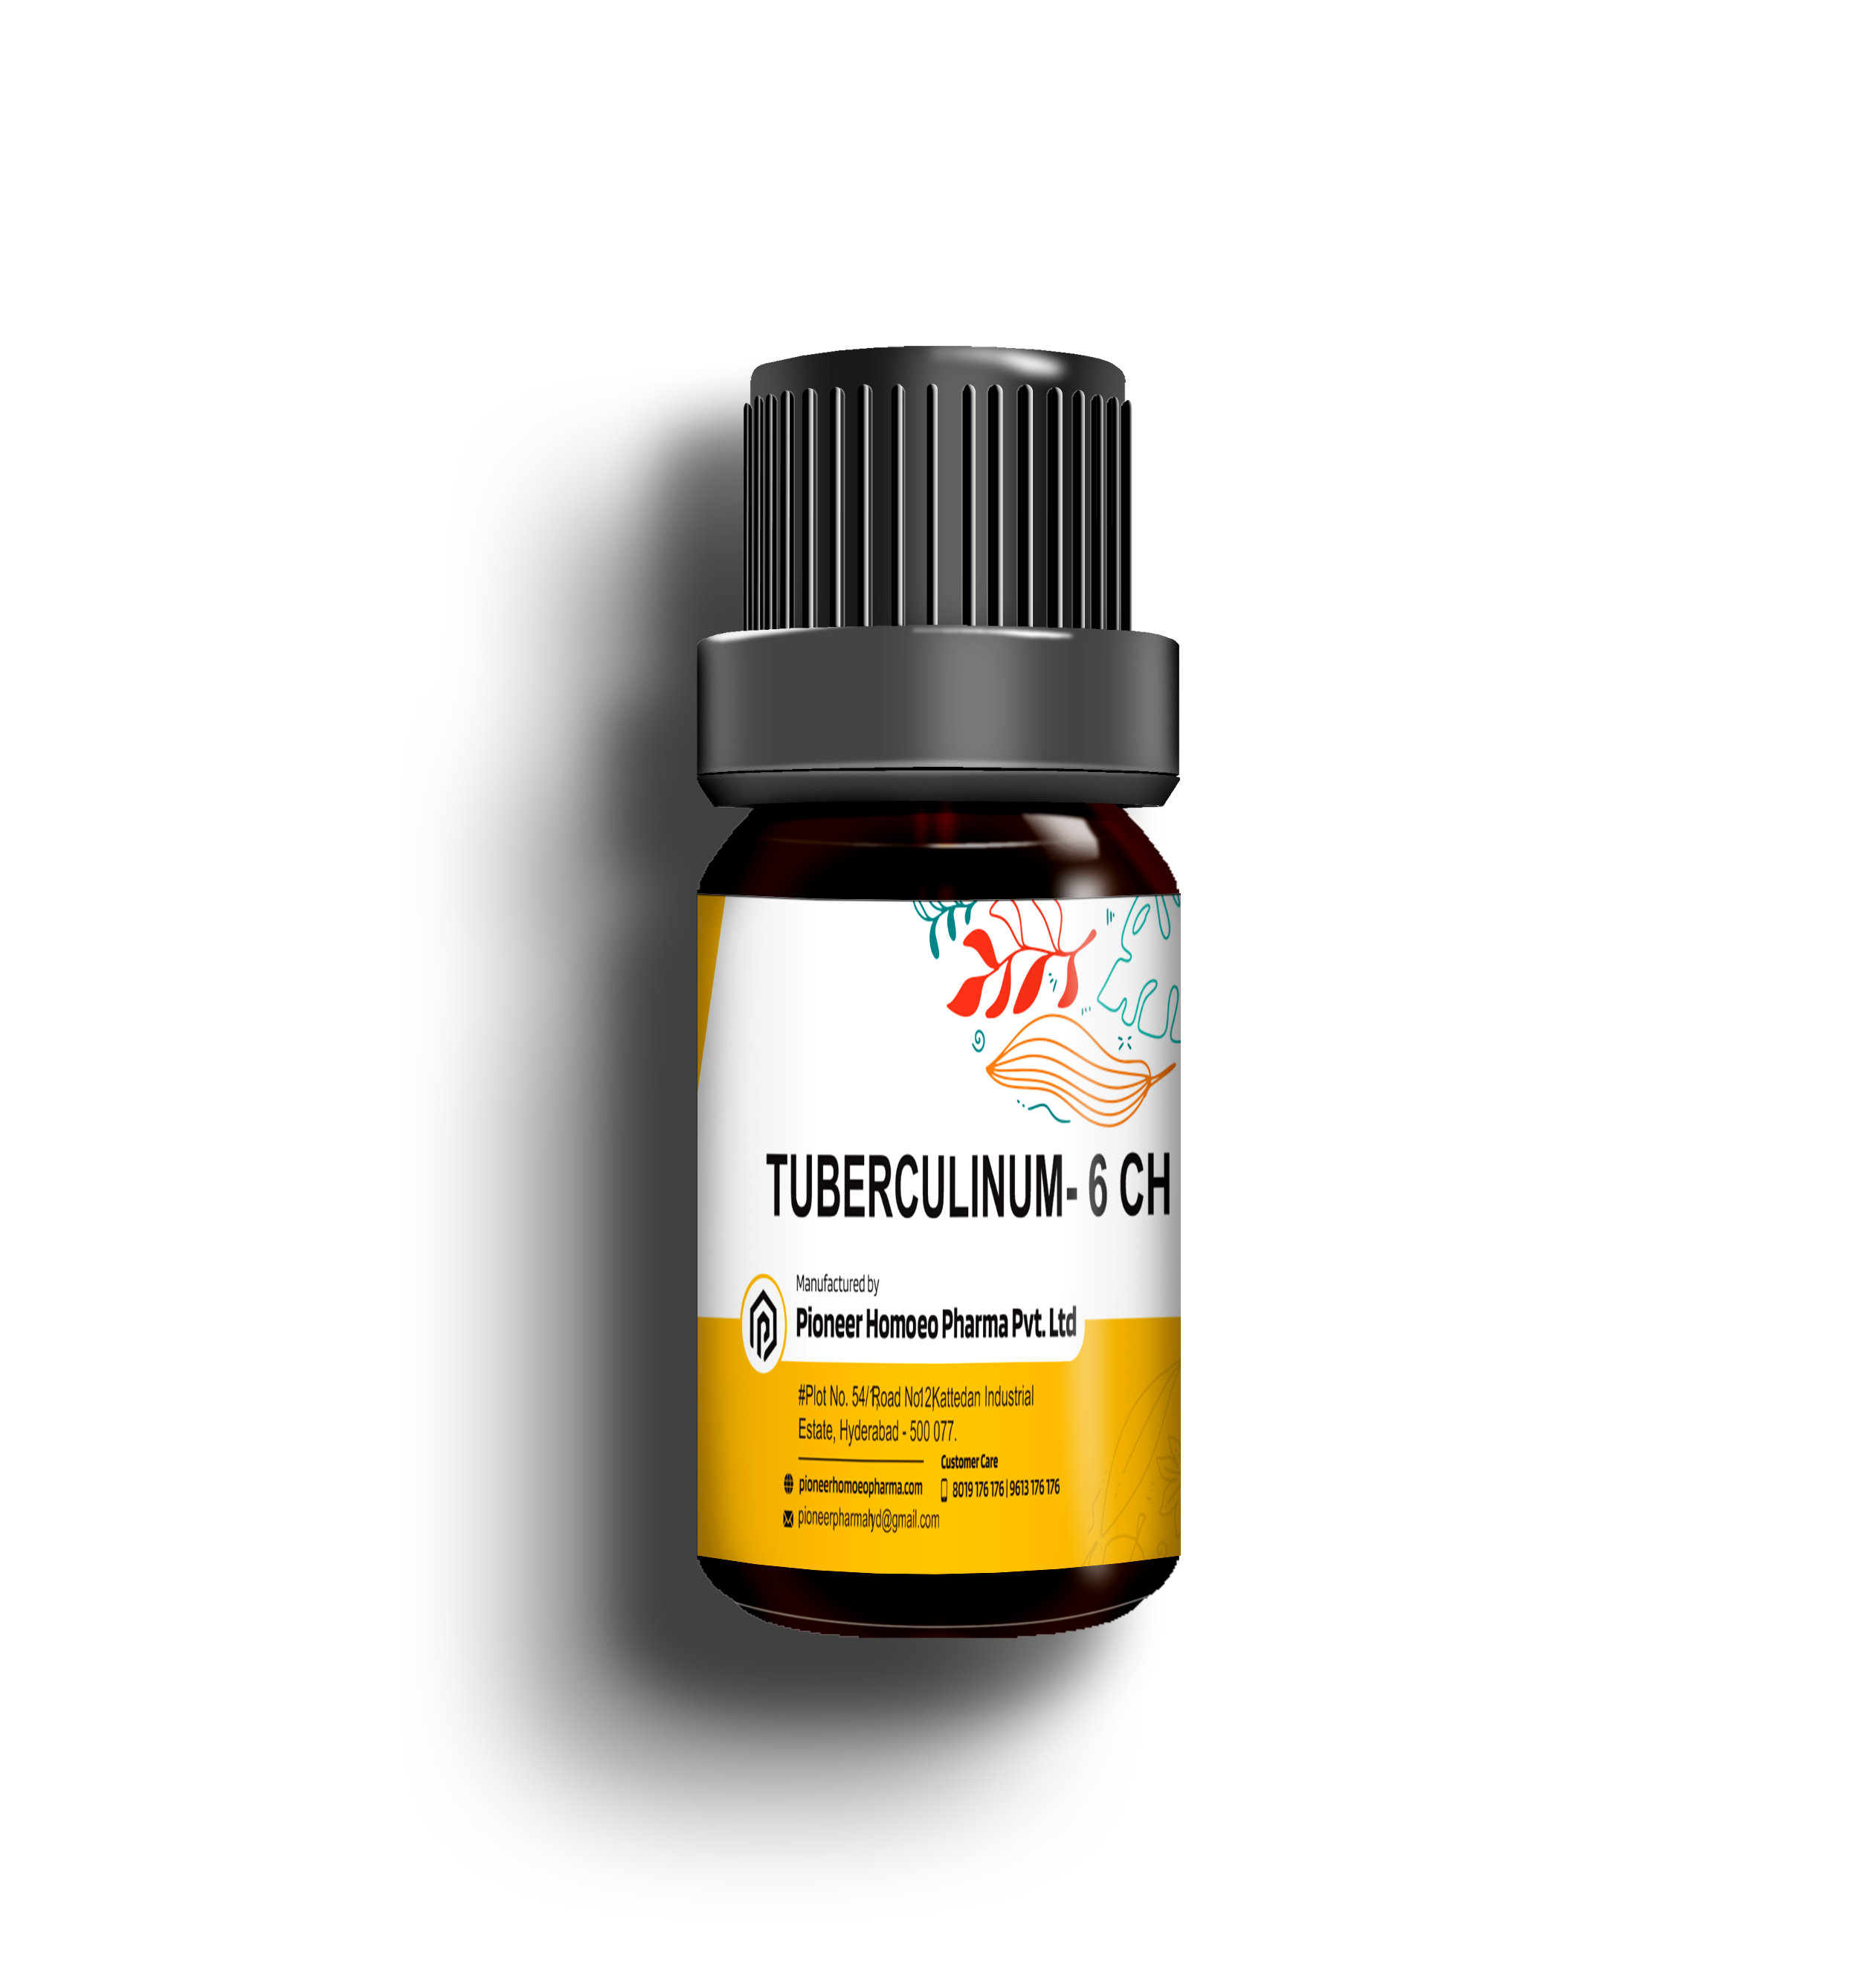 TUBERCULINUM-6-CH